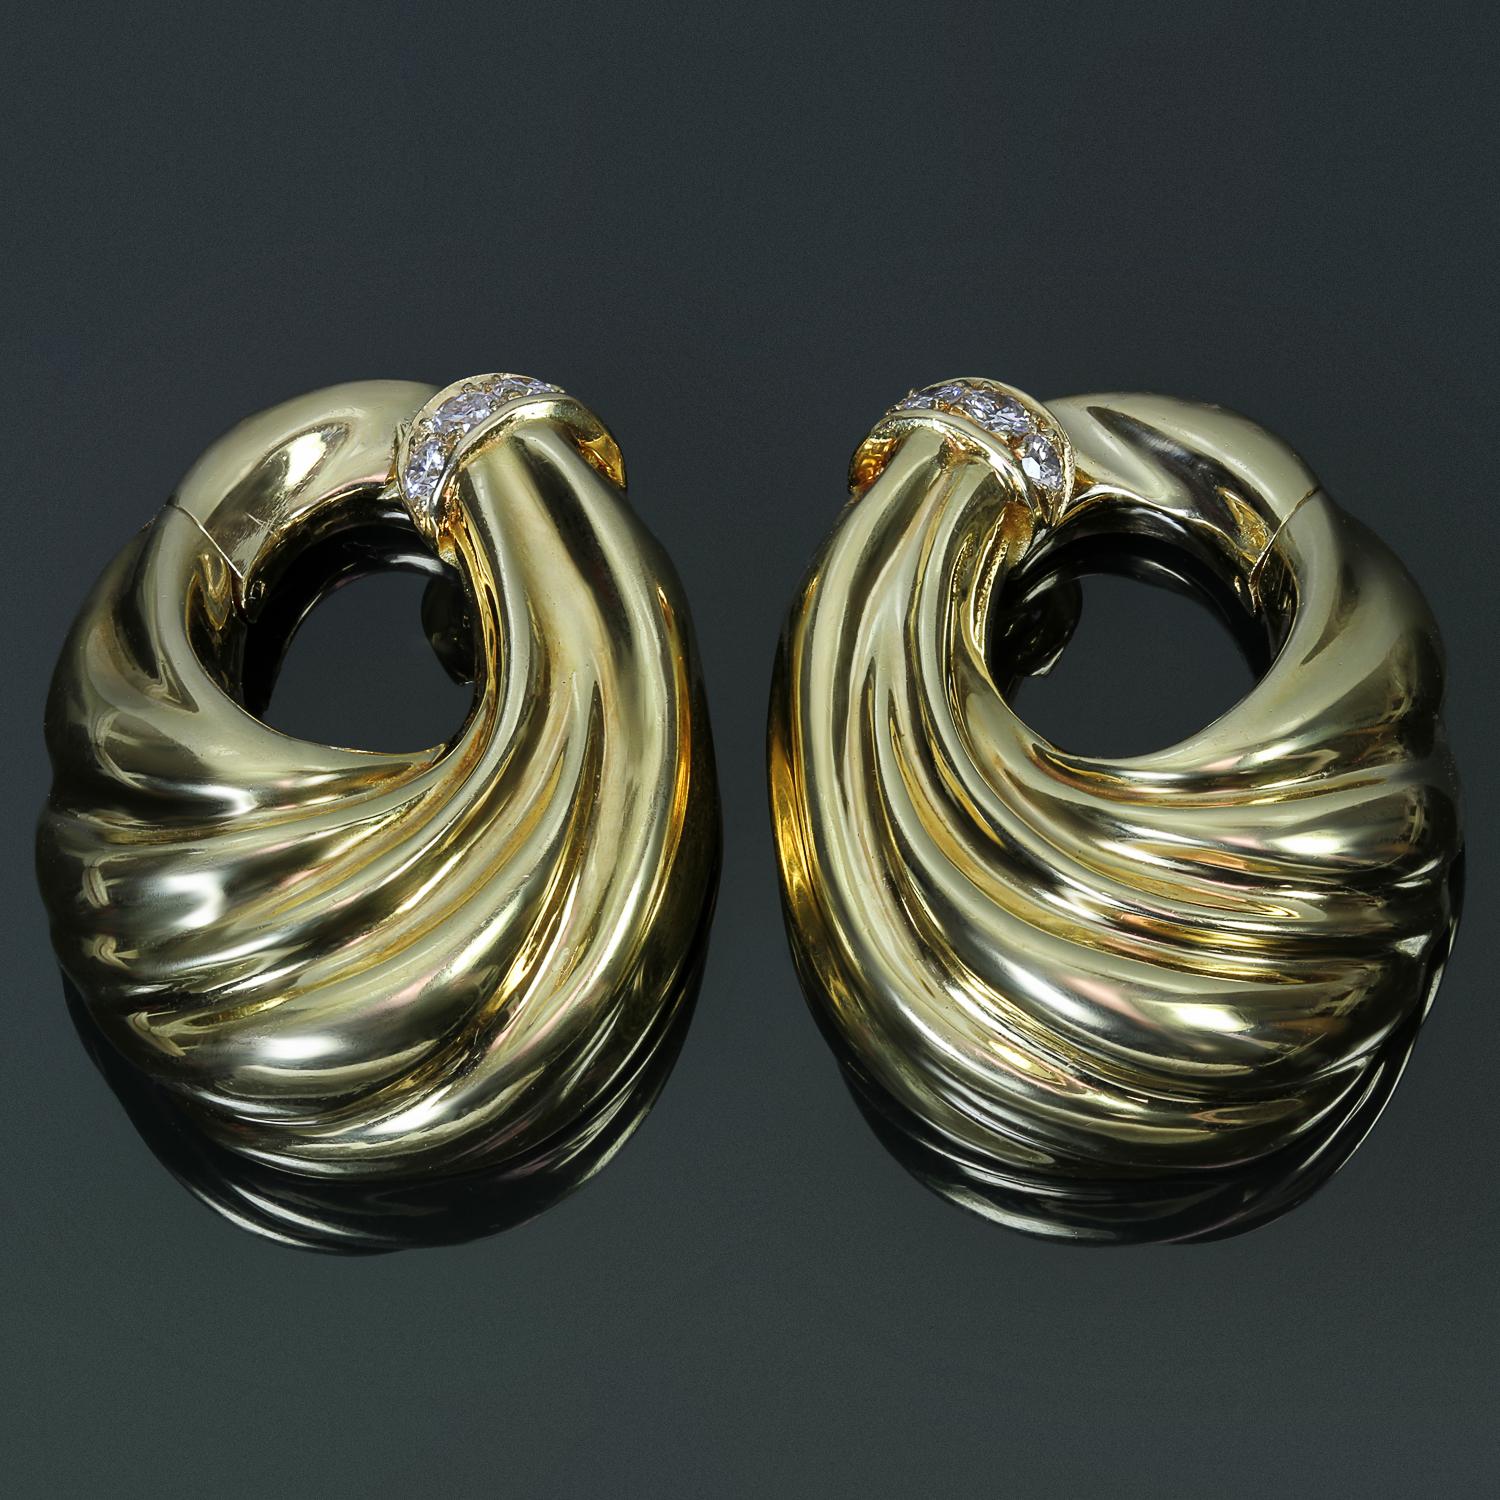 Diese fabelhaften Vintage-Ohrringe von Van Cleef & Arpels sind in einem wirbelnden Clip-on-Design aus 18 Karat Gelbgold gefertigt und mit runden D-E-F VVS1-VVS2-Diamanten im Brillantschliff mit einem geschätzten Gewicht von 0,40 Karat besetzt.